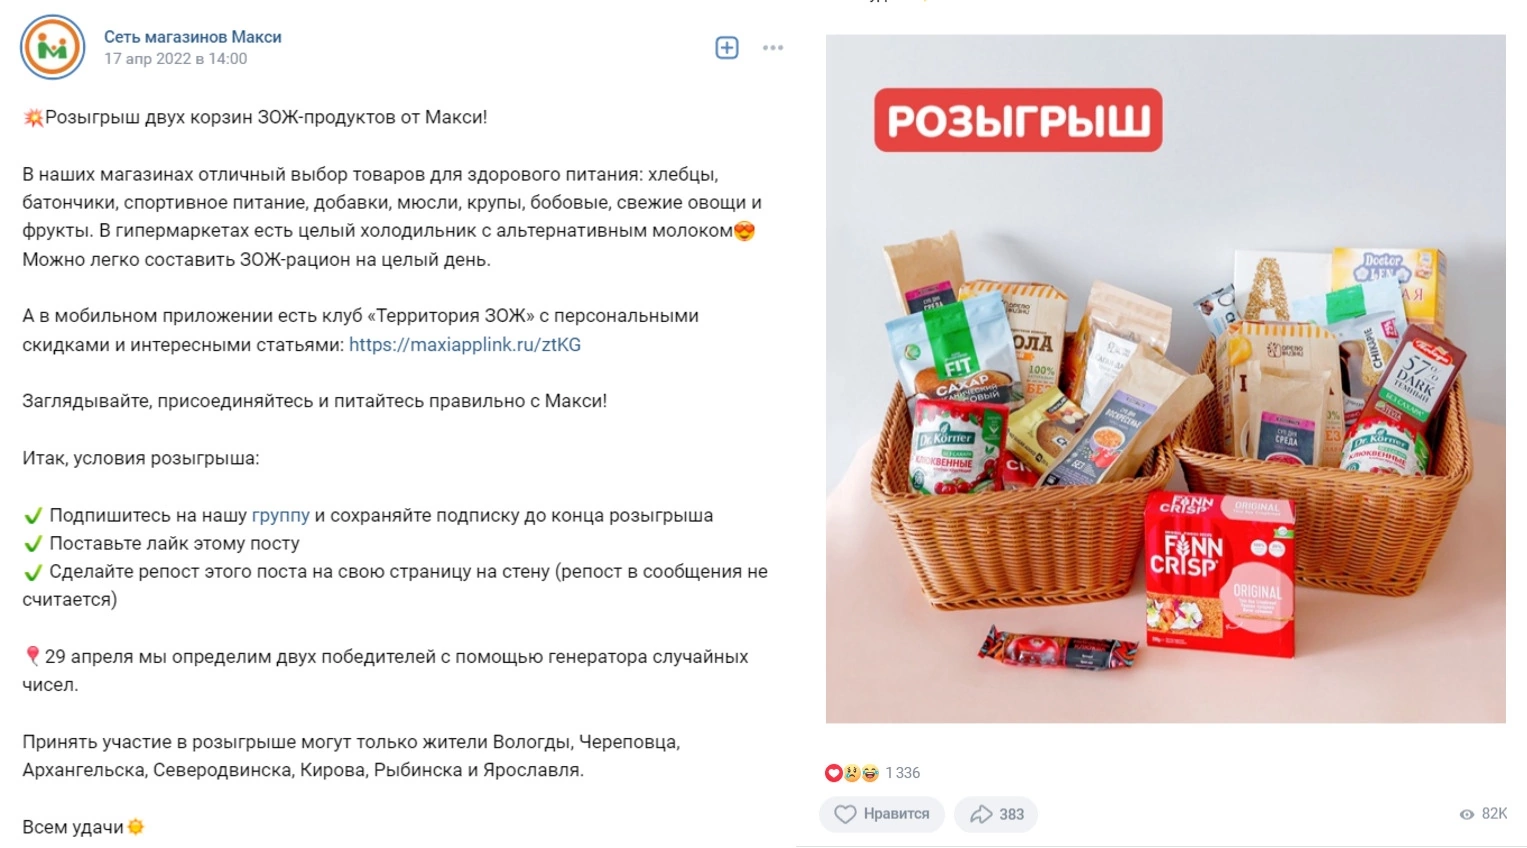 Как проводить розыгрыши во «Вконтакте» без нарушения правил